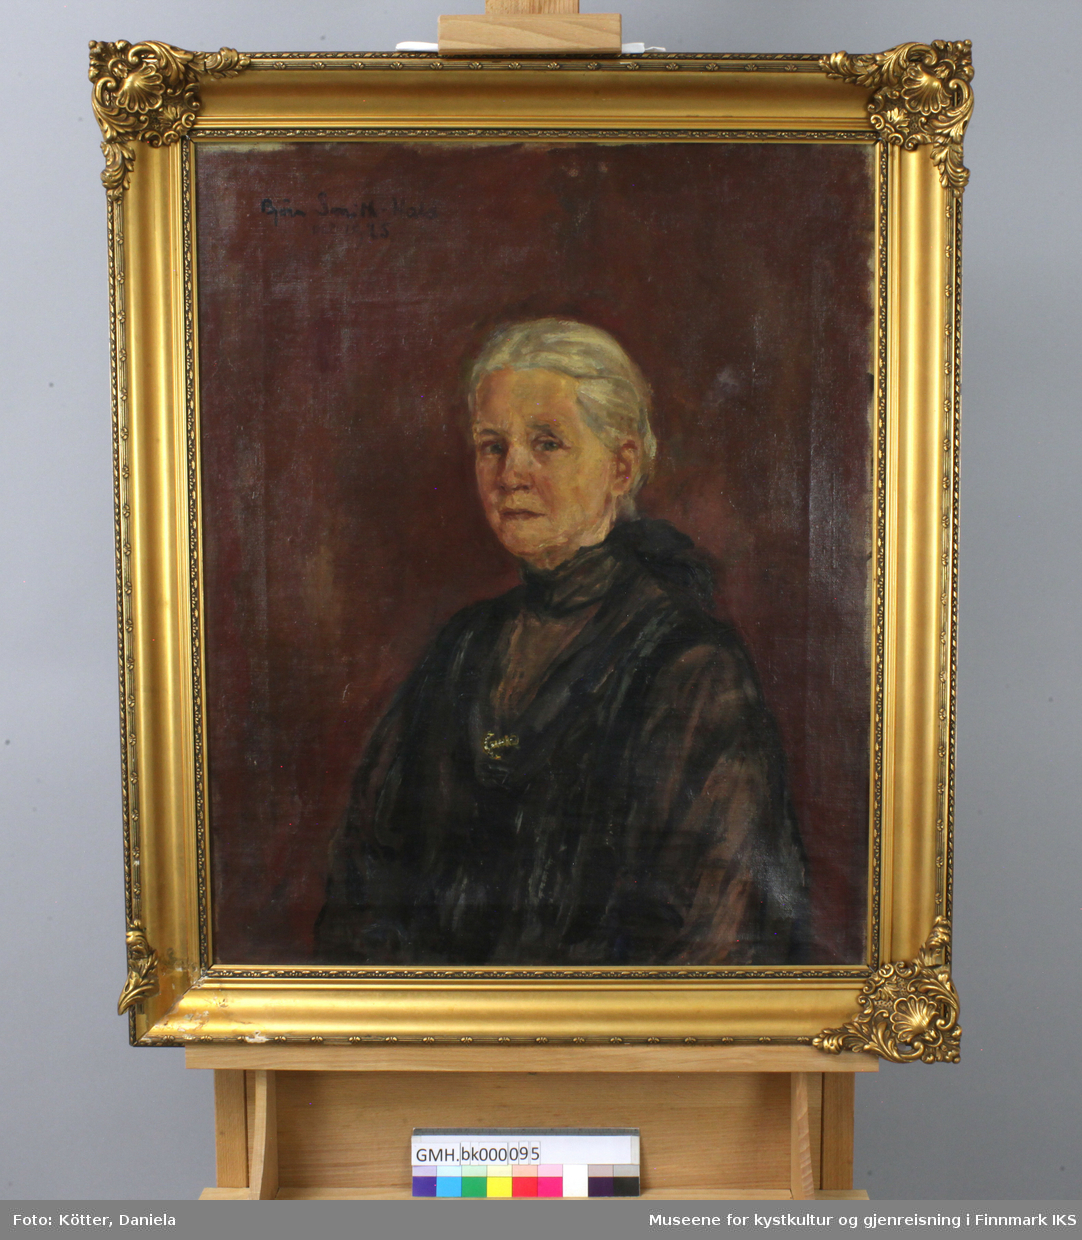 Emilie Birgitte Eckmann er portrettert som eldre dame. Det gråe håret er satt opp til en kute i nakken. Hun er ikledd mørke klær og en slags tynn kåpe som holdes sammen over brystet med en brosje utformet som anker.  Bakgrunnen er utført i mørke rødnyanser. Kunstneren Bjørn Smith-Hald sin signatur med datering 1925 i øvre venstre hjørnet. Bildet ble utført ti år før den avbildede døde.